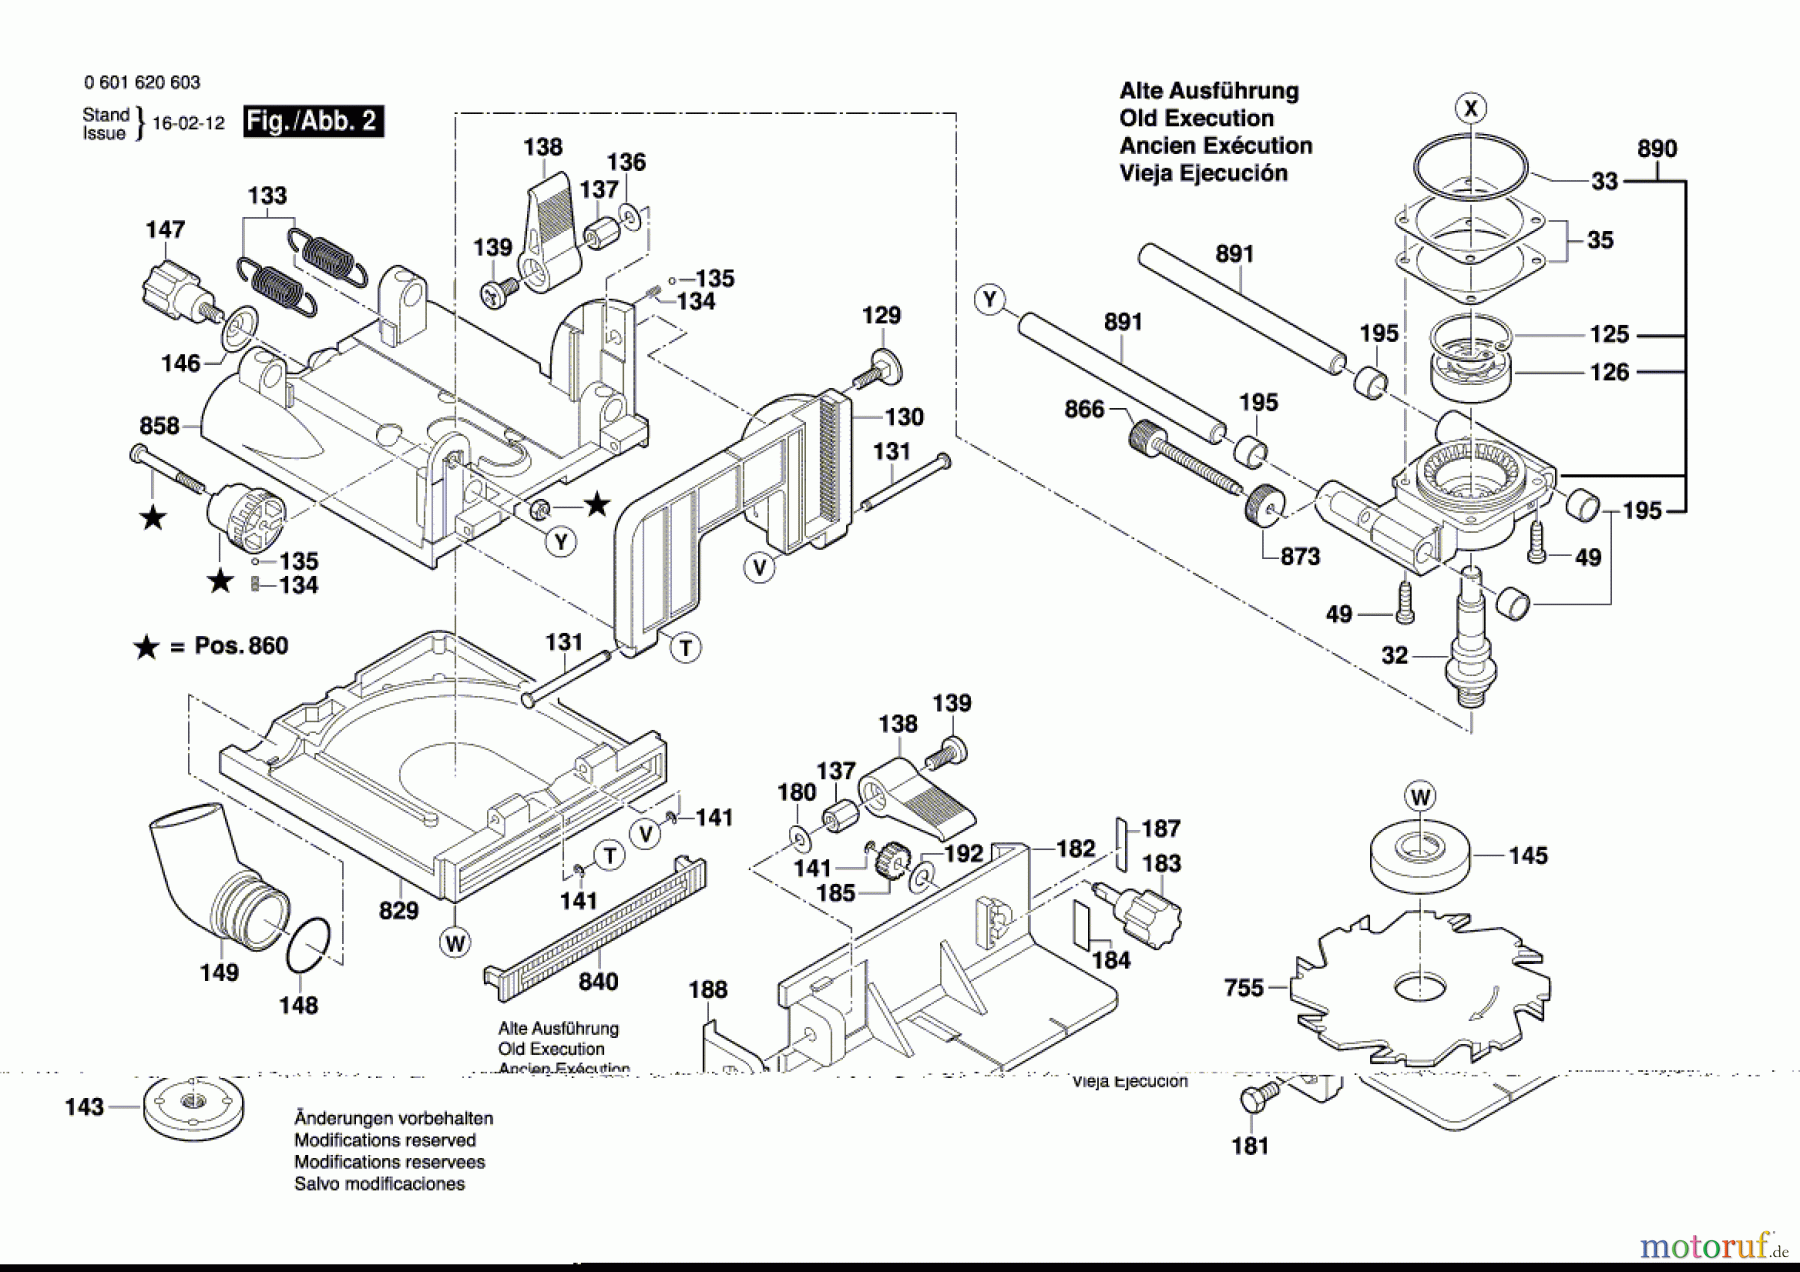  Bosch Werkzeug Flachdübelfräse GFF 22 A Seite 2